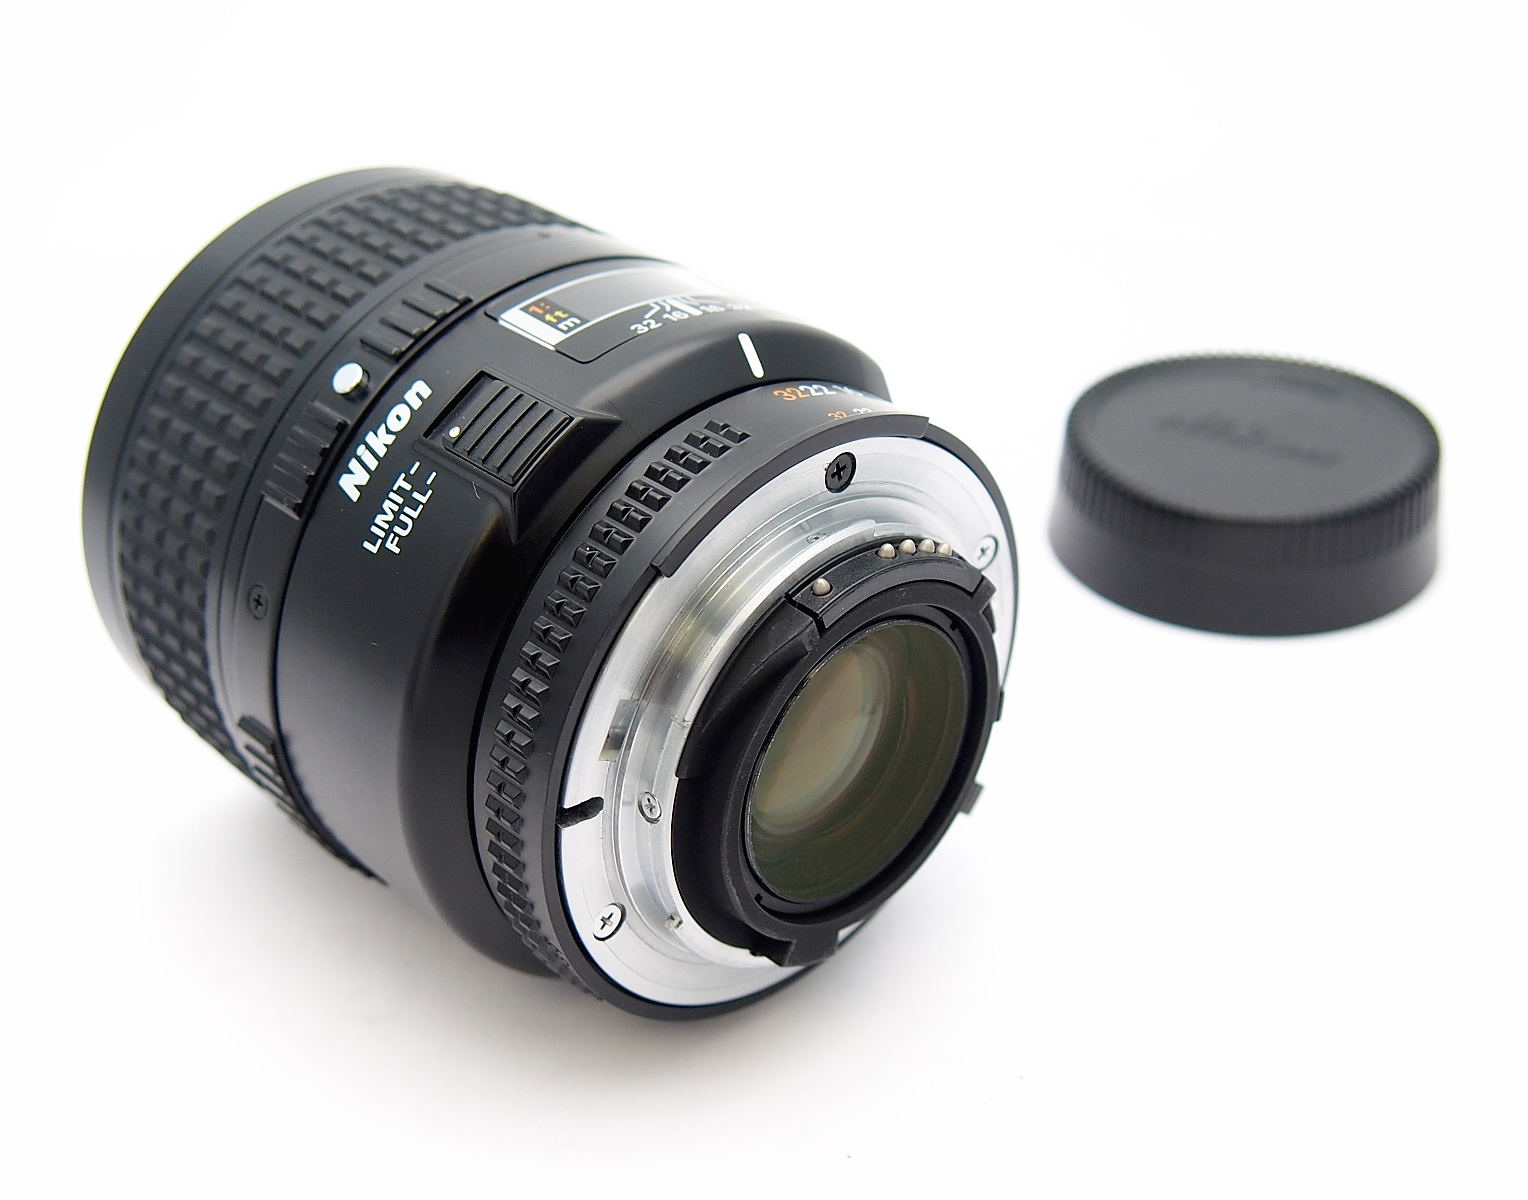 Nikon Micro-Nikkor 60mm F2.8 AF Mount Lens #9681